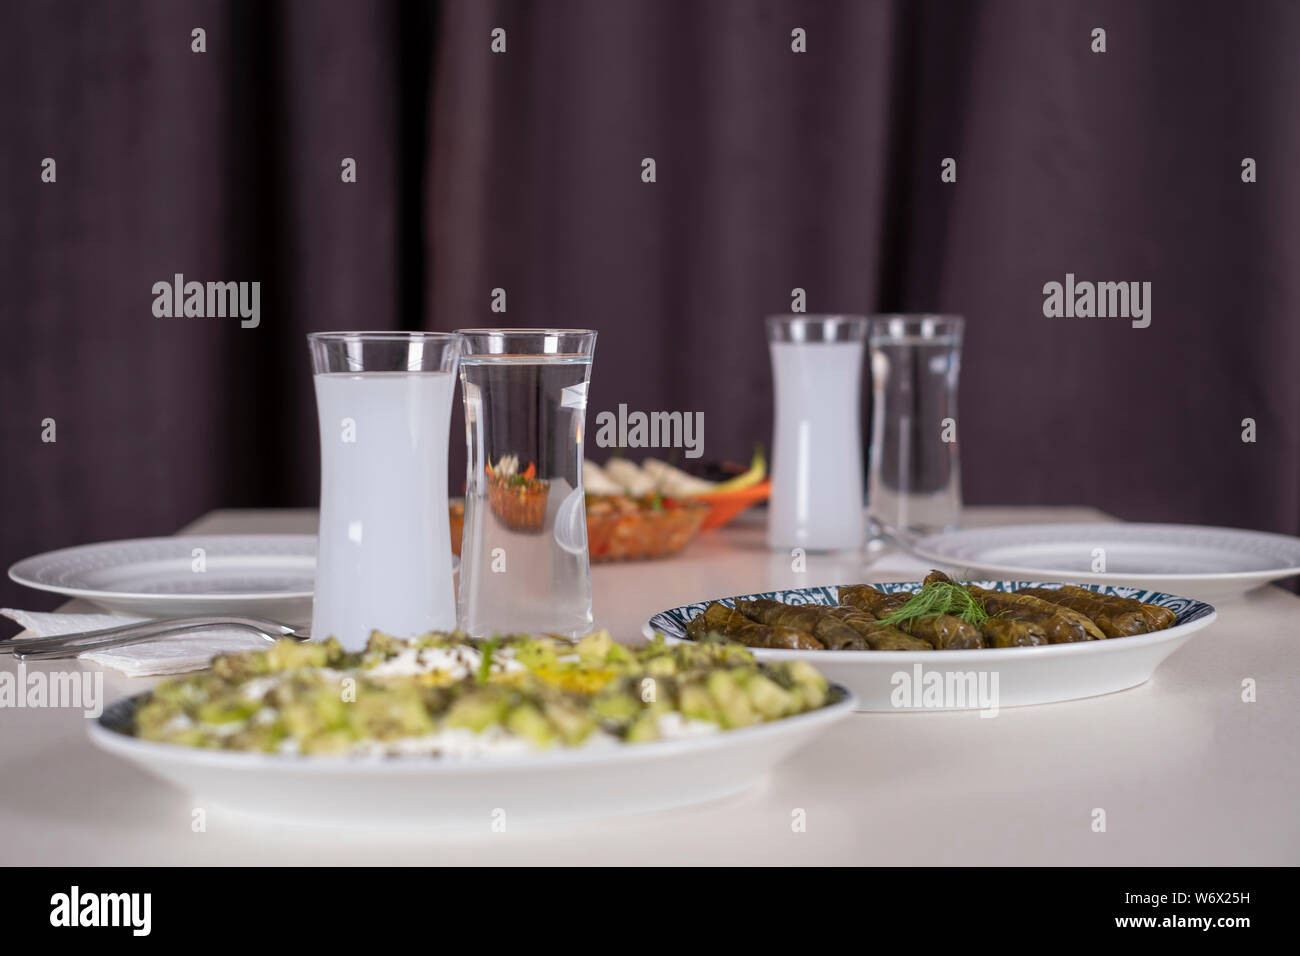 Türkische und griechische traditionelle Esstisch mit speziellen Alkohol trinken Raki. Ouzo und türkischen Raki ist ein trockener Anis aromatisiert Aperitif. Stockfoto